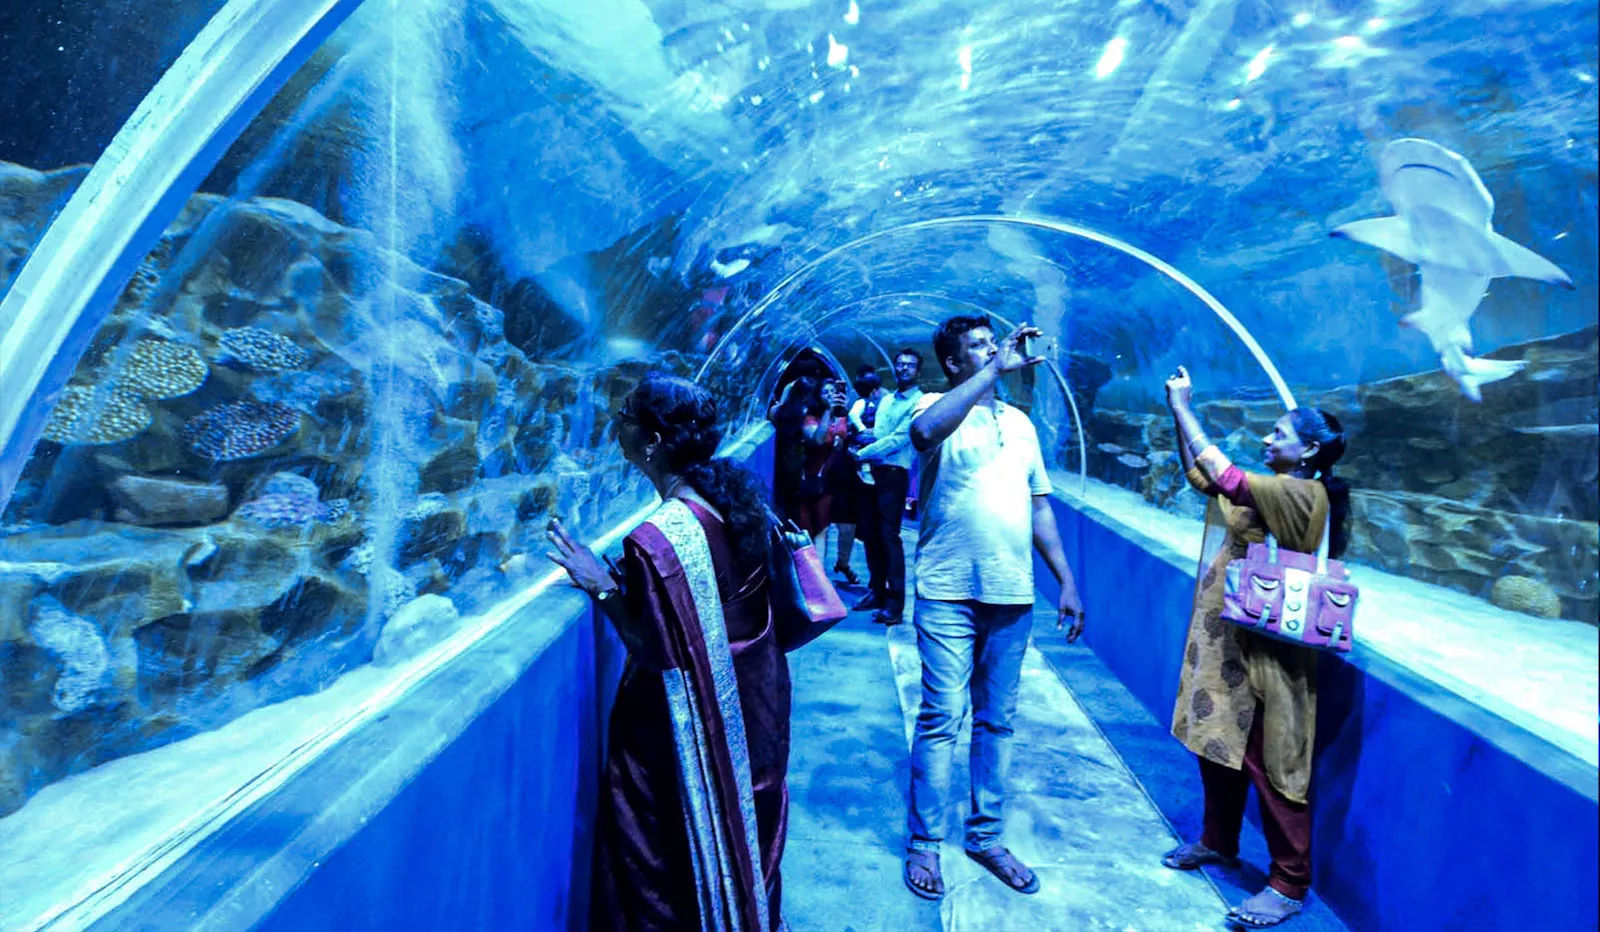 VGP Marine Kingdom in India, Central Asia | Aquariums & Oceanariums - Rated 4.1